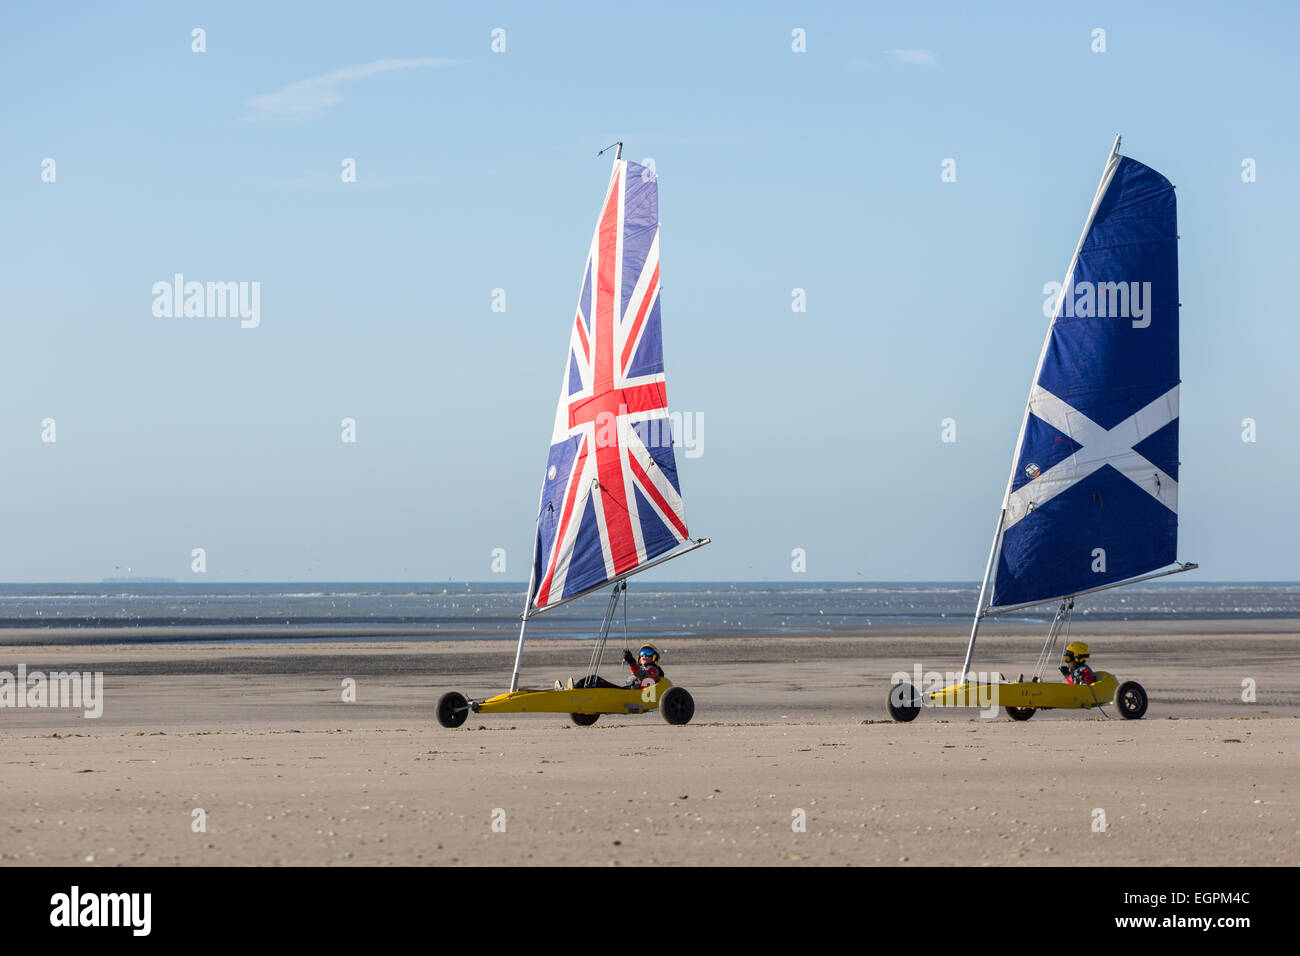 Zwei Yachten mit britischer Flagge Segel, das andere mit dem schottischen Andreaskreuz auf einen Strand landen Stockfoto